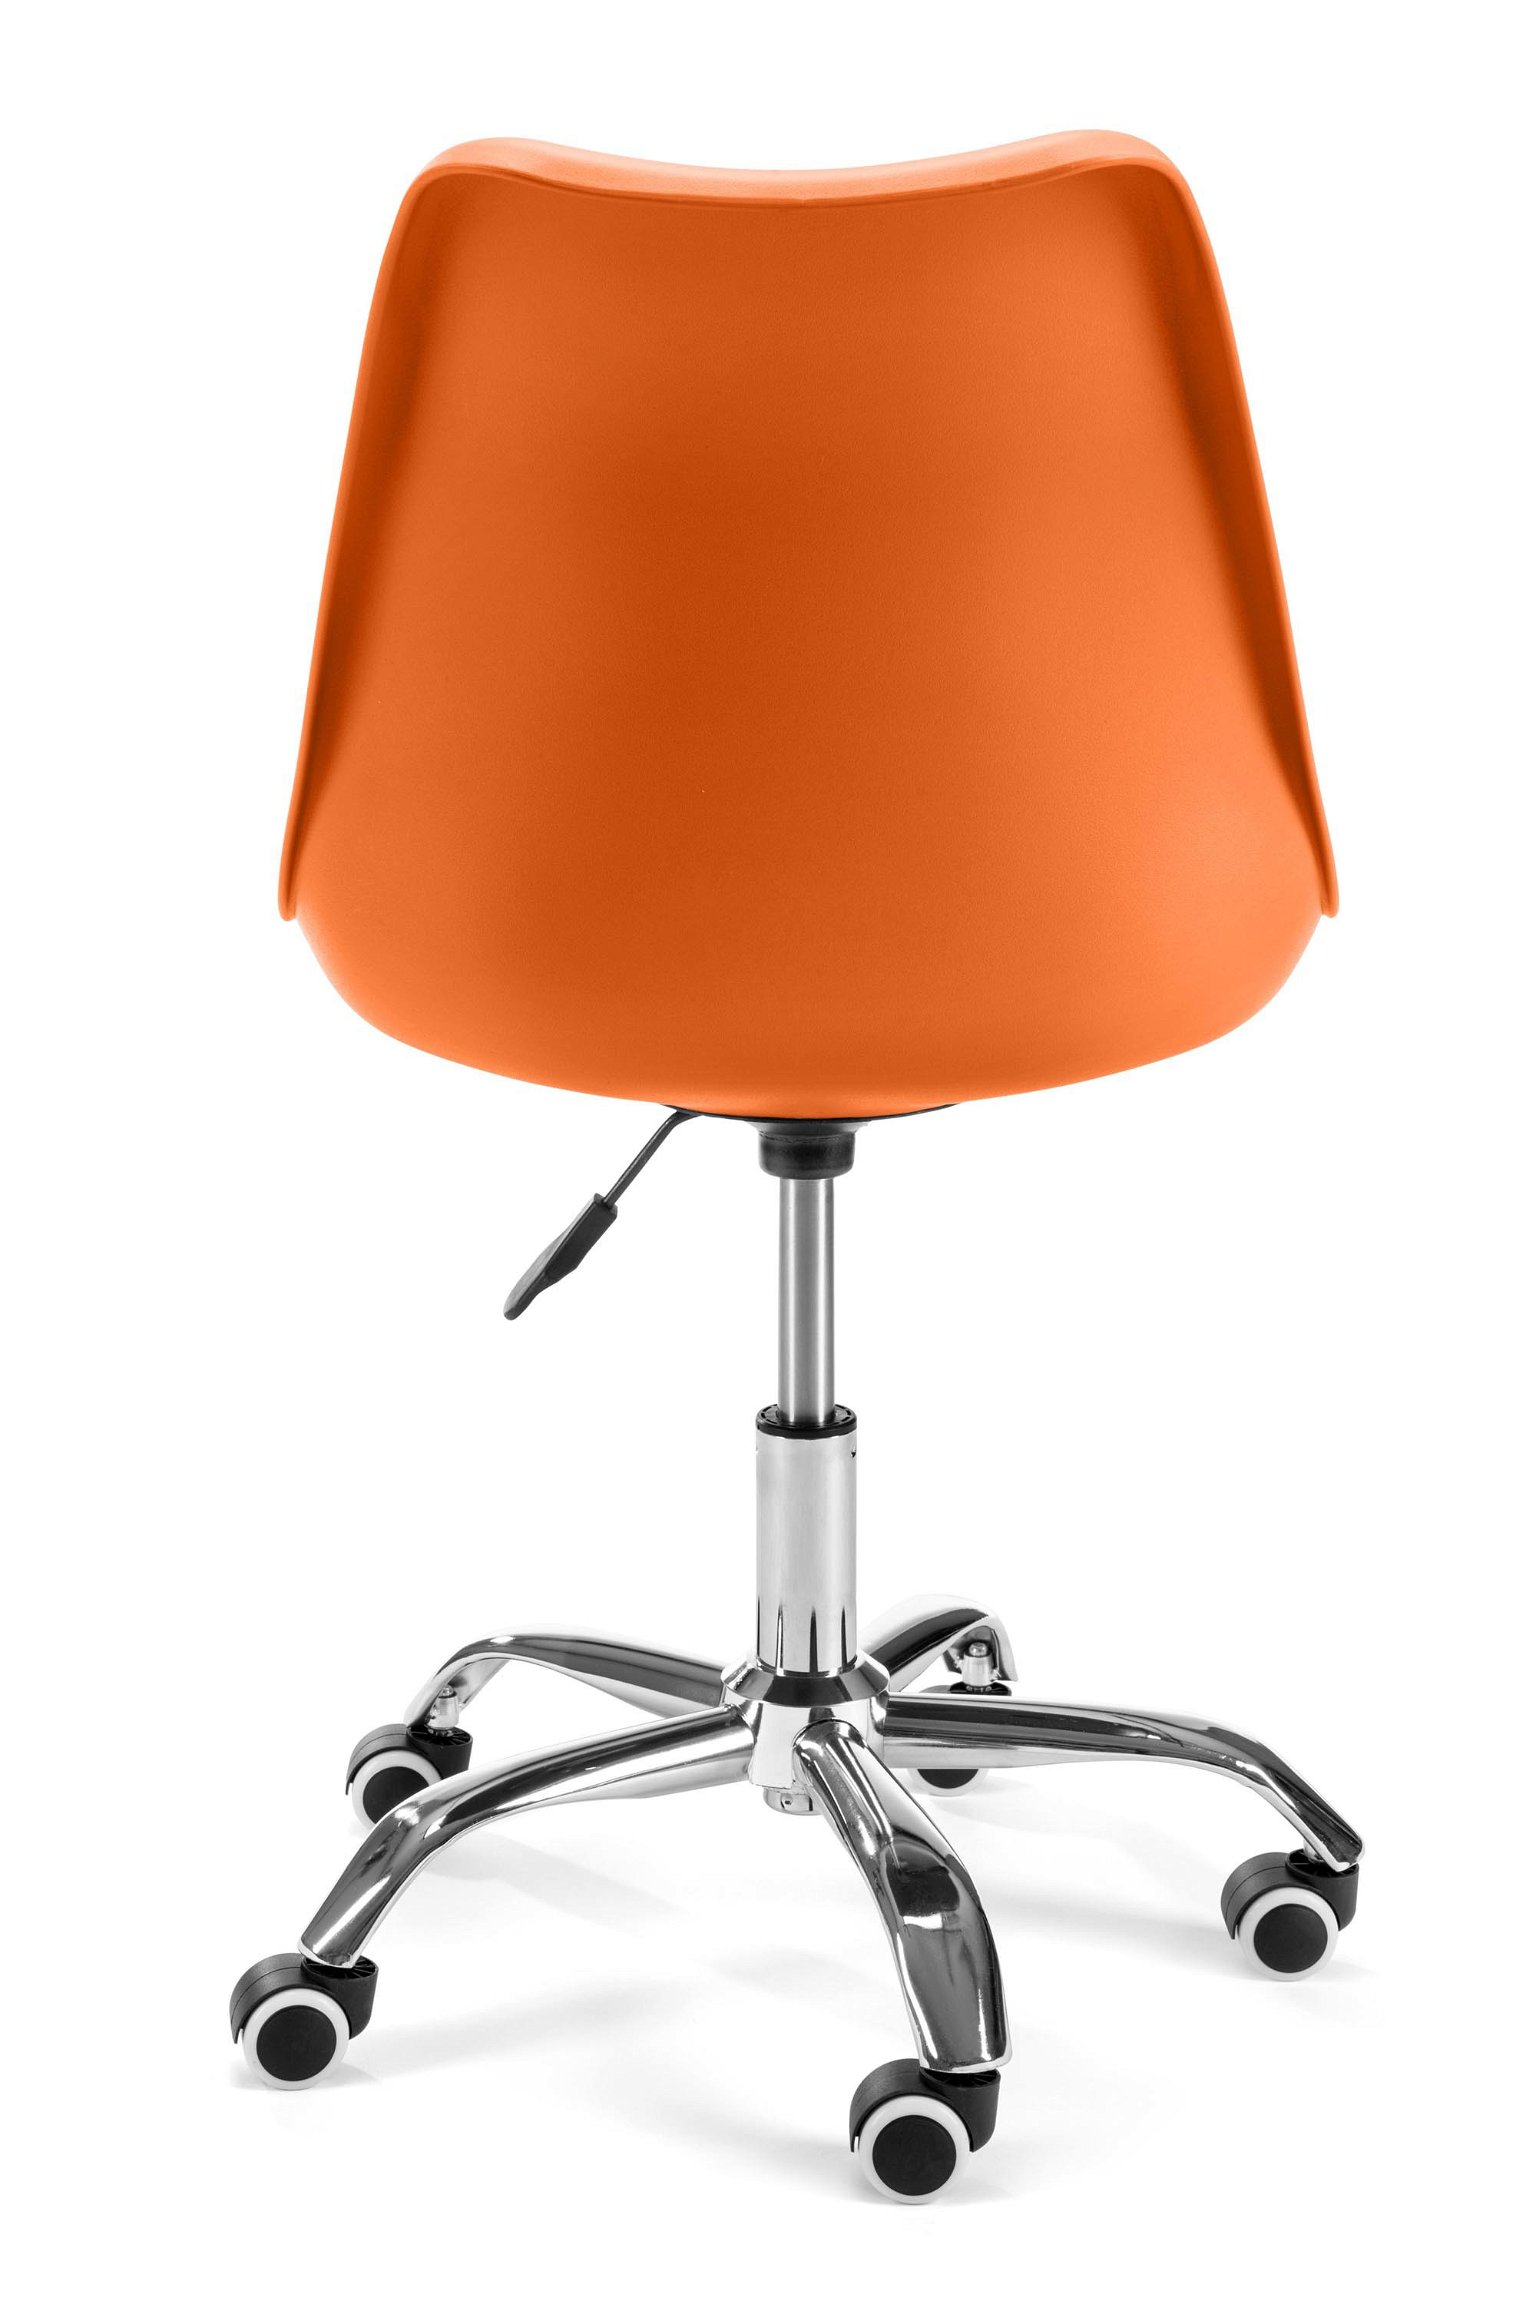 Vaikiška kėdė FD005, oranžinė - 4